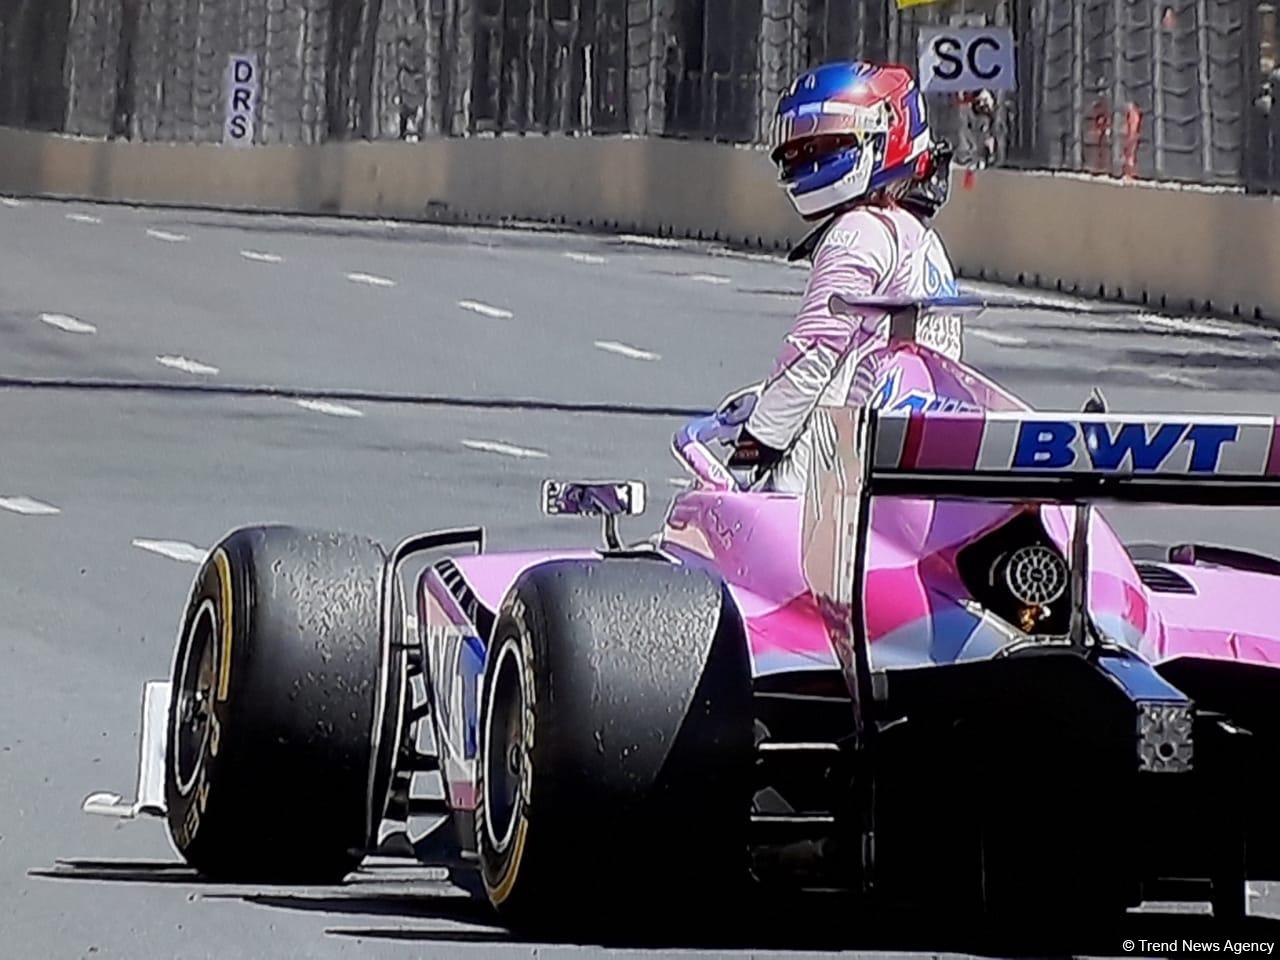 Formula 2-də qəzalar – Üç pilot yarışı dayandırdı (FOTO)